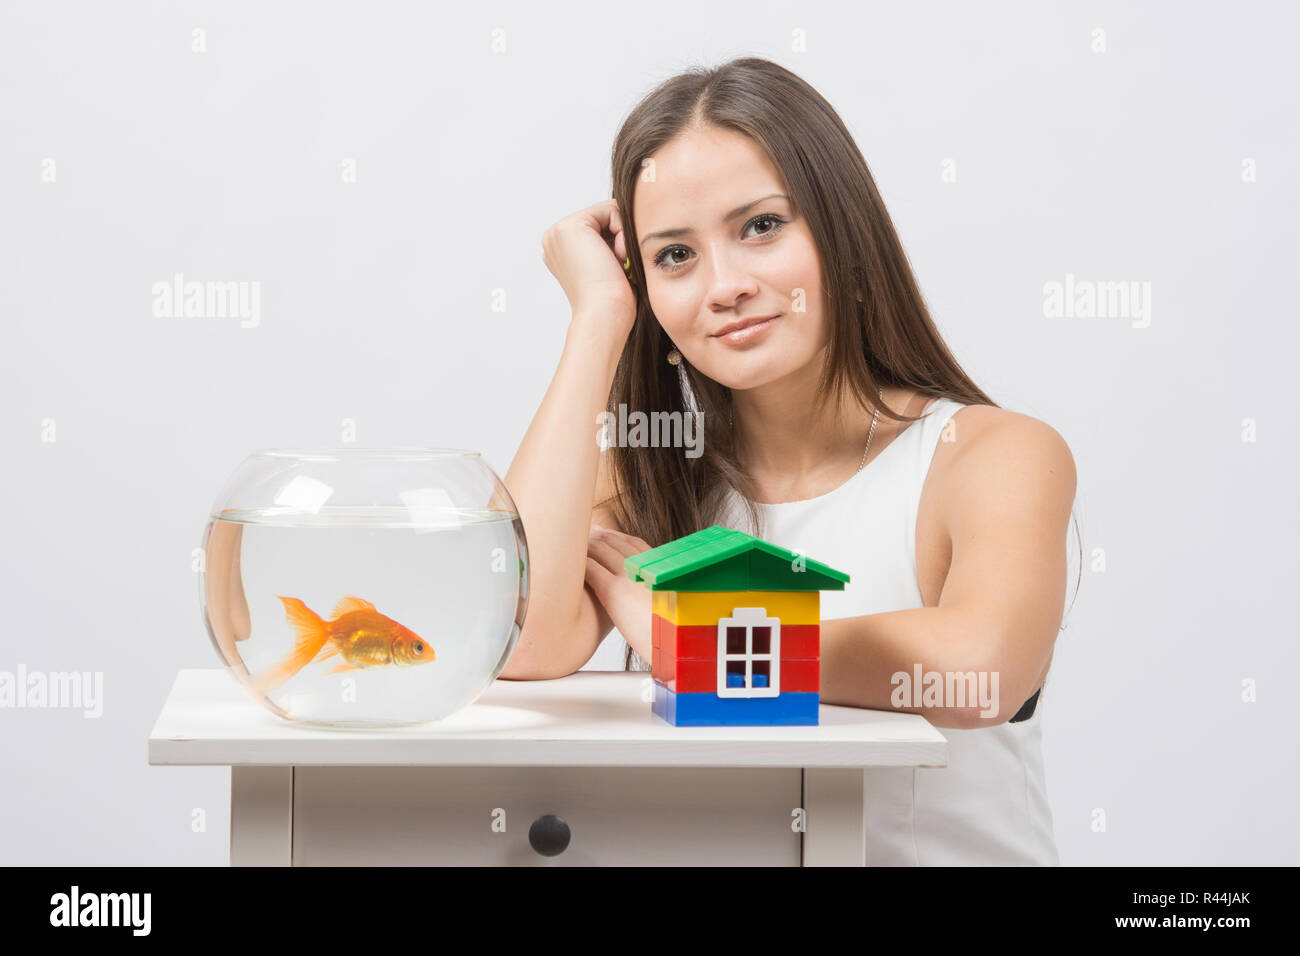 La ragazza si siede a un tavolo su cui vi è un acquario con pesci rossi e toy house Foto Stock